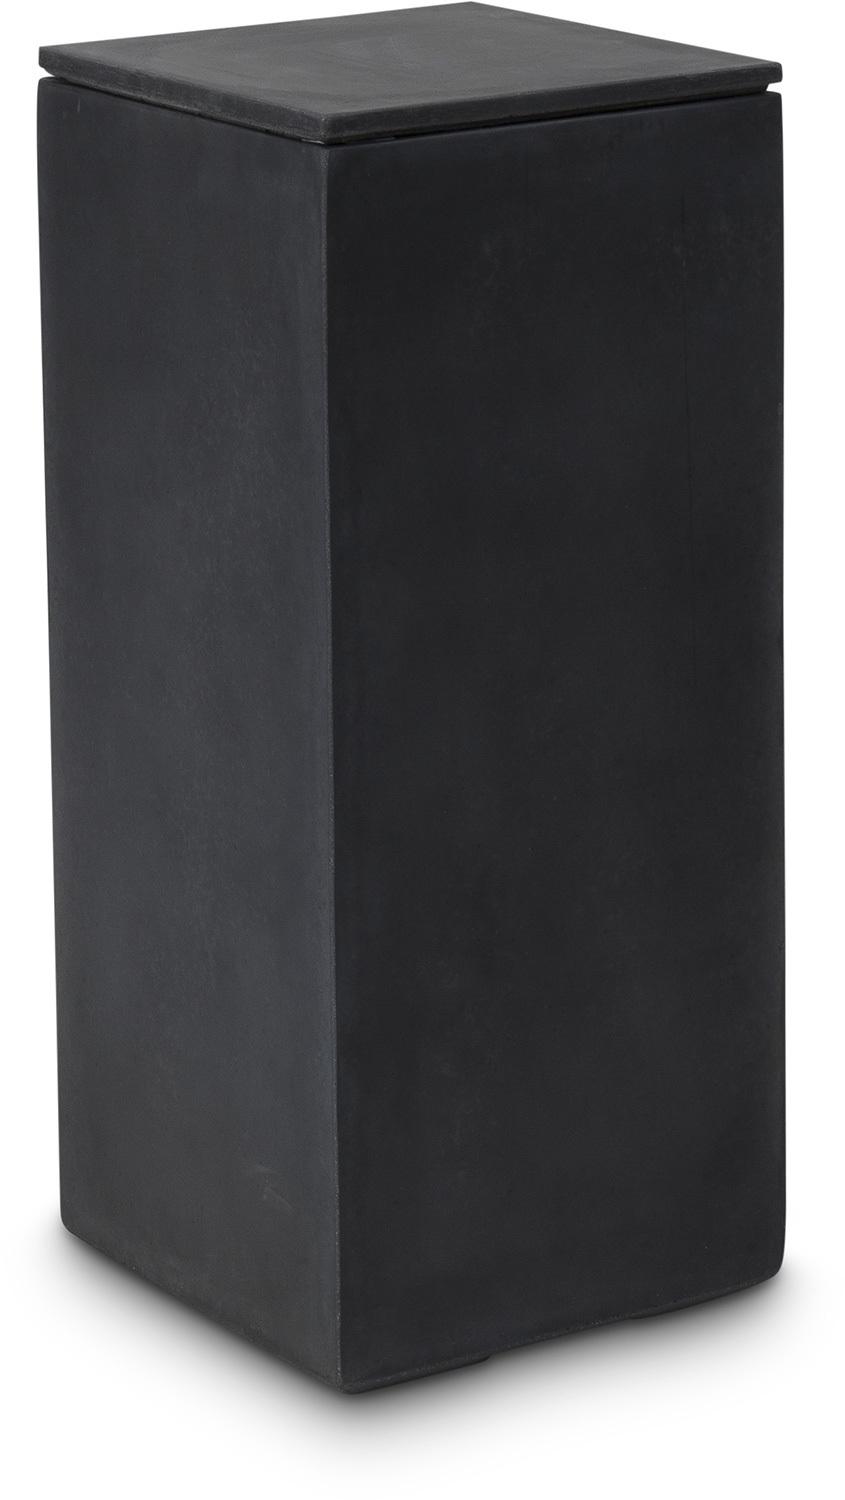 DIVISION PLUS Deckel, 35x35/3 cm, anthrazit